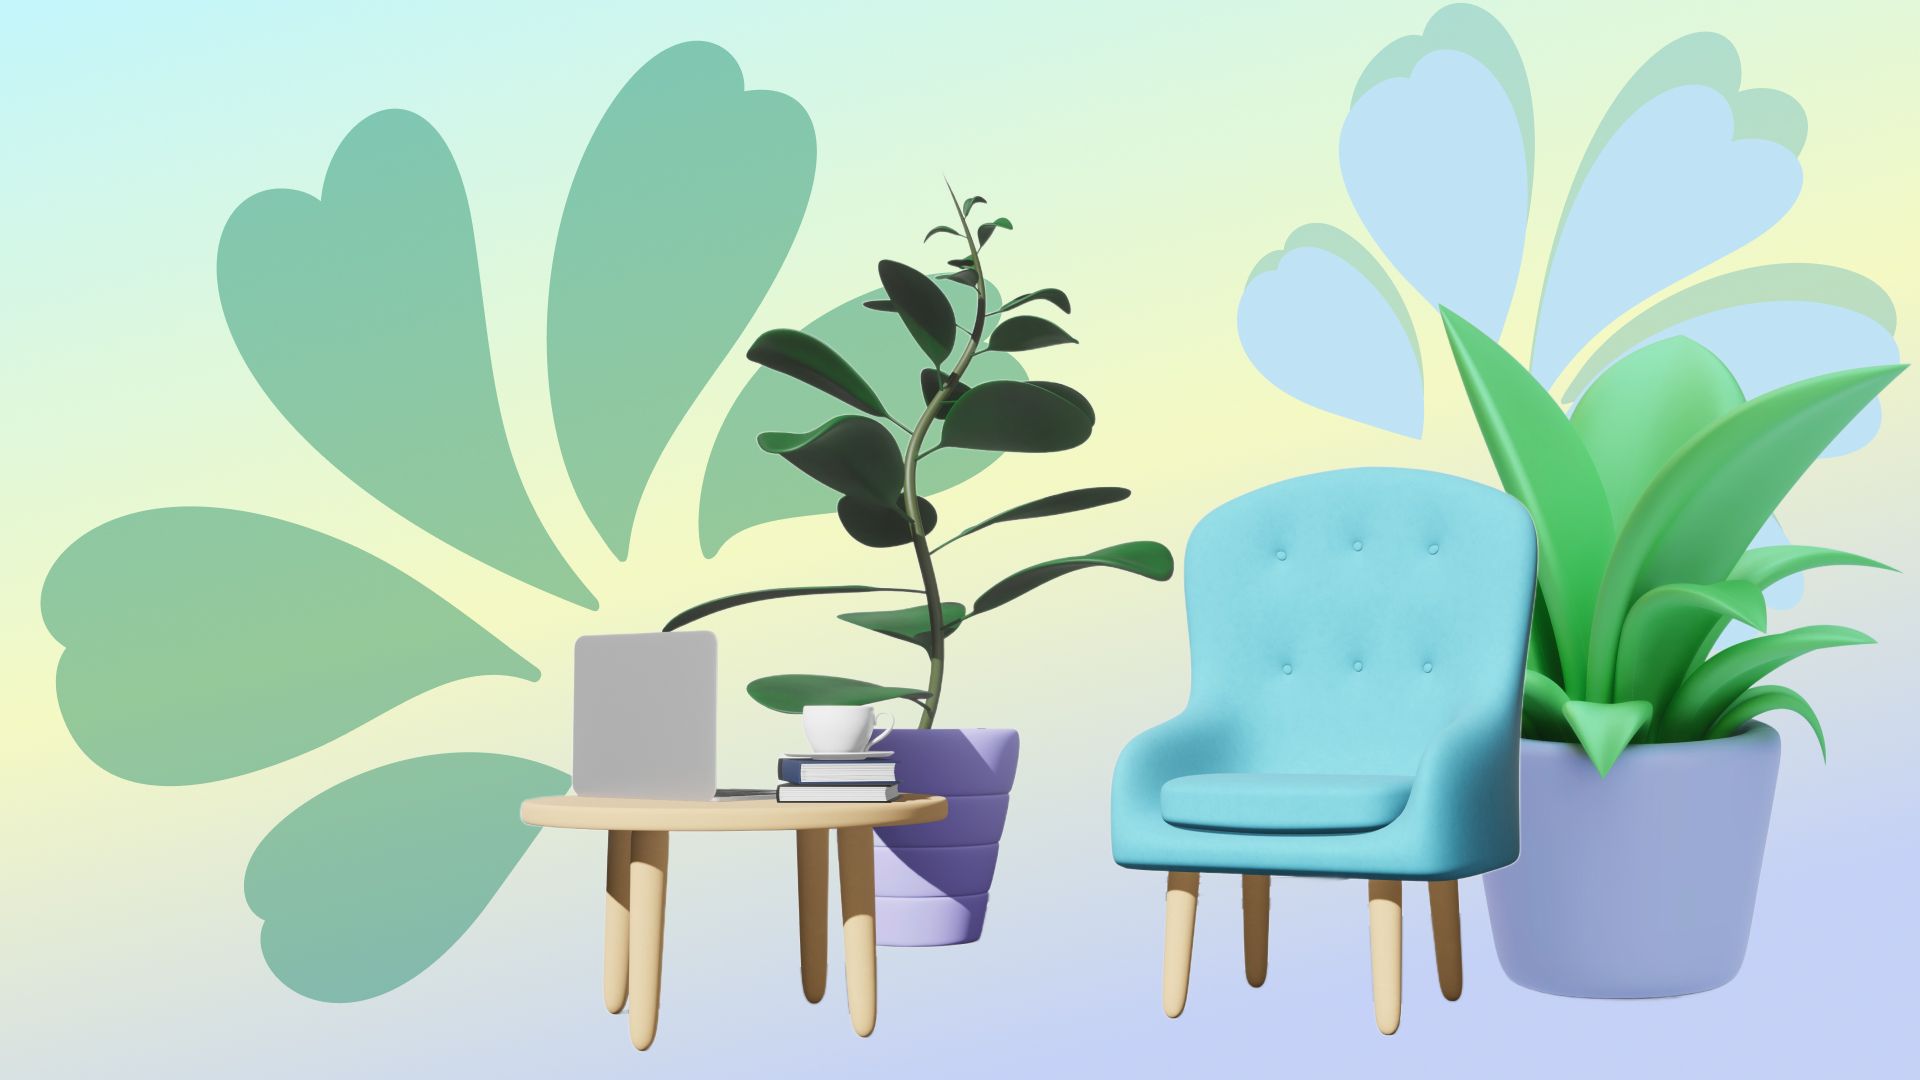 17 комнатных растений, которые привлекают счастье и удачу в дом